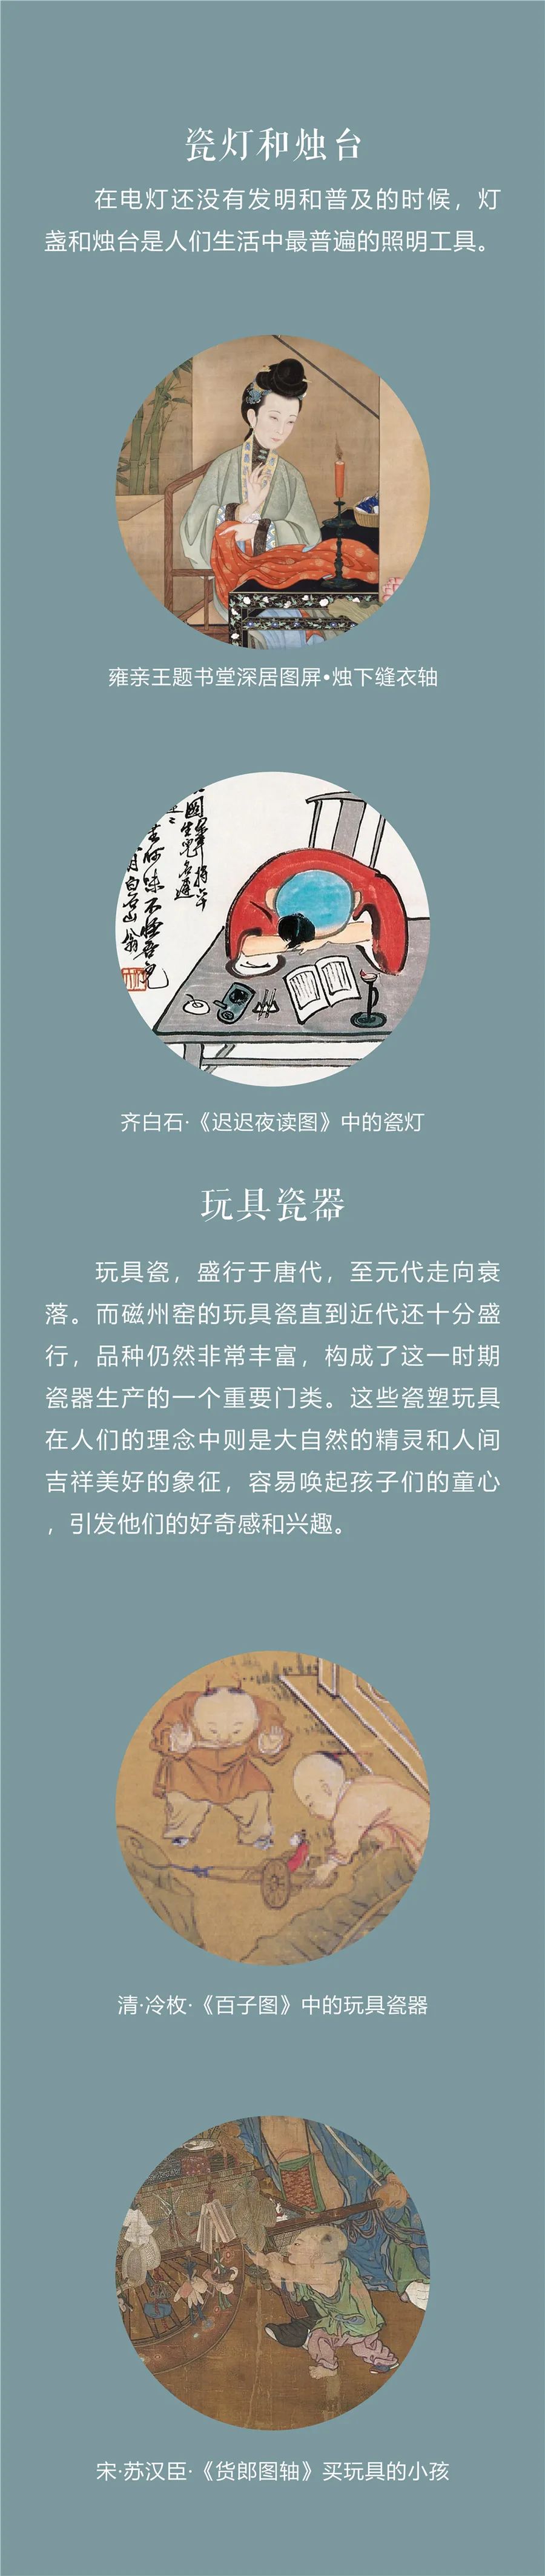 线上展览：《千年窑火生生不息——邯郸市博物馆馆藏磁州窑瓷器展》第一期